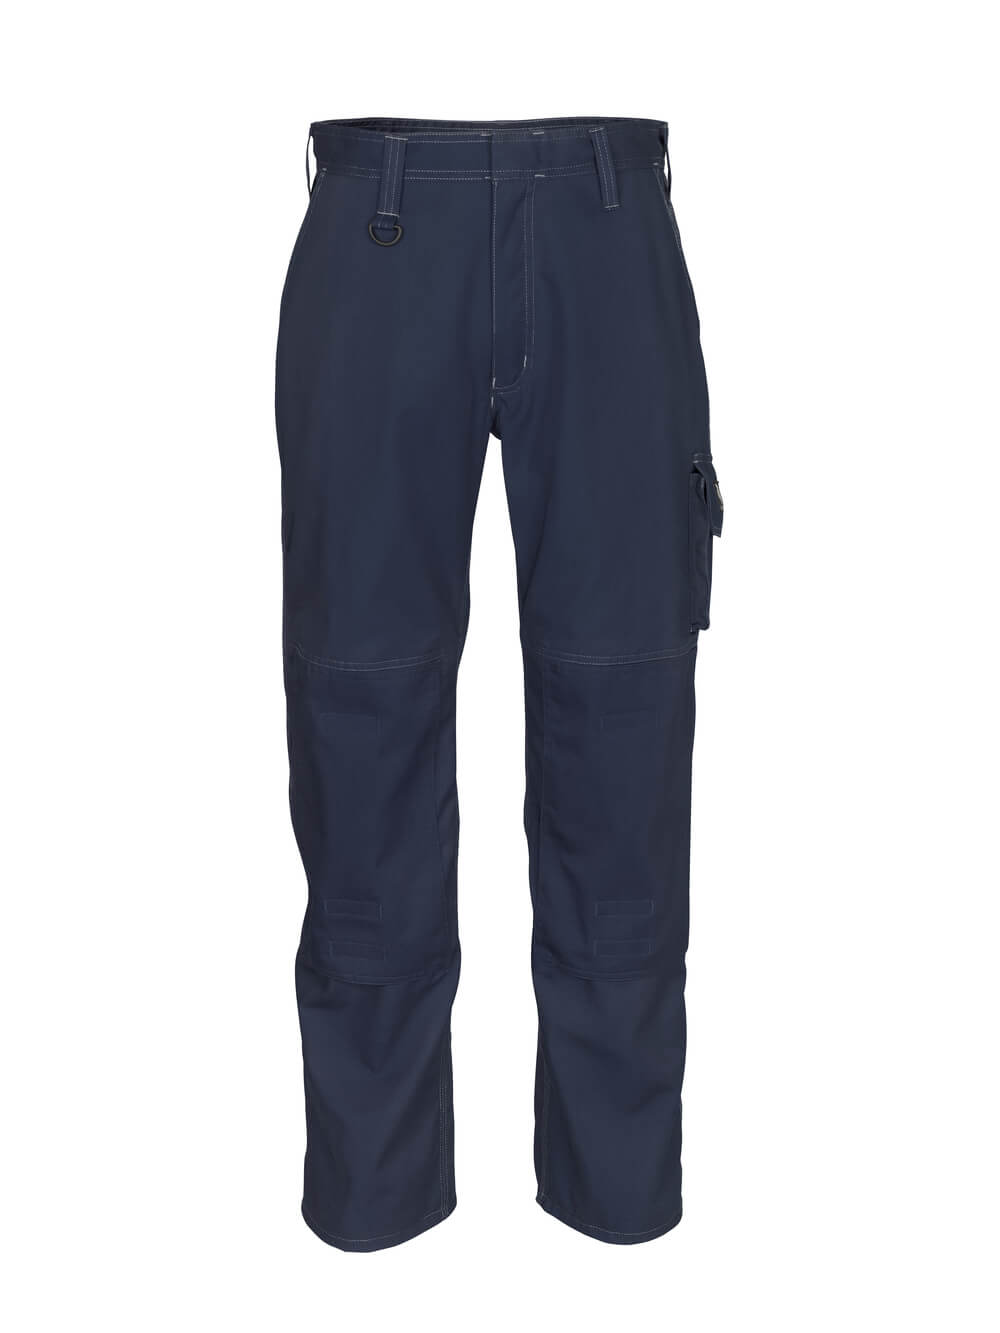 MASCOT® INDUSTRY Hose mit Knietaschen »Biloxi« Gr. 76/C46, schwarzblau - direkt von HUG Technik ✓